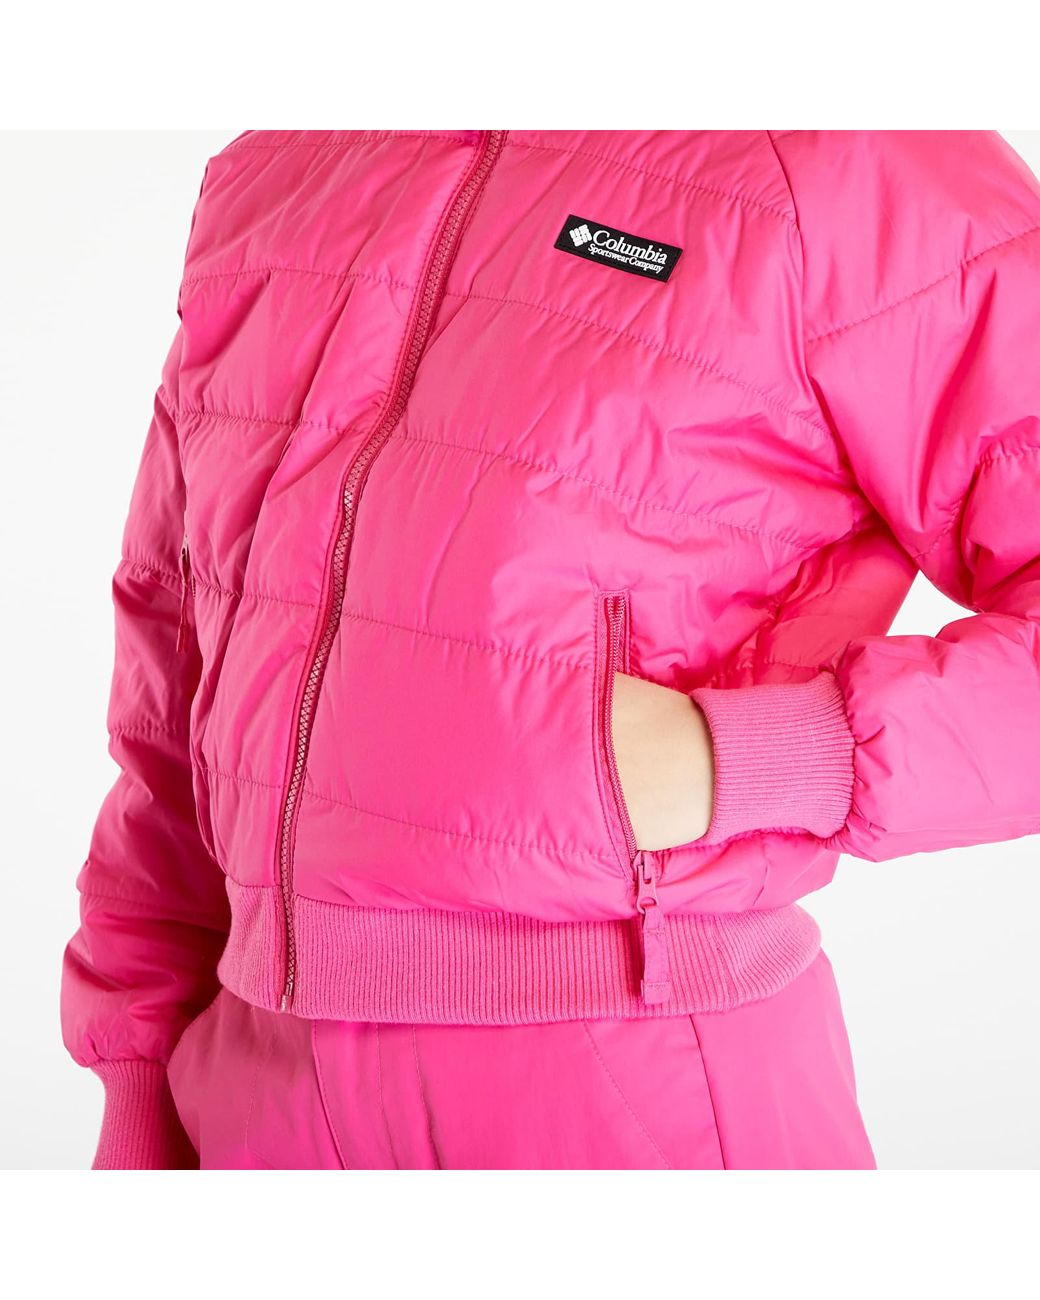 Columbia Wintertrainertm 3-in-1 Interchange Waterproof Print/ Jacket | Pink Fizz Lyst Woven Nature Fuchsia in